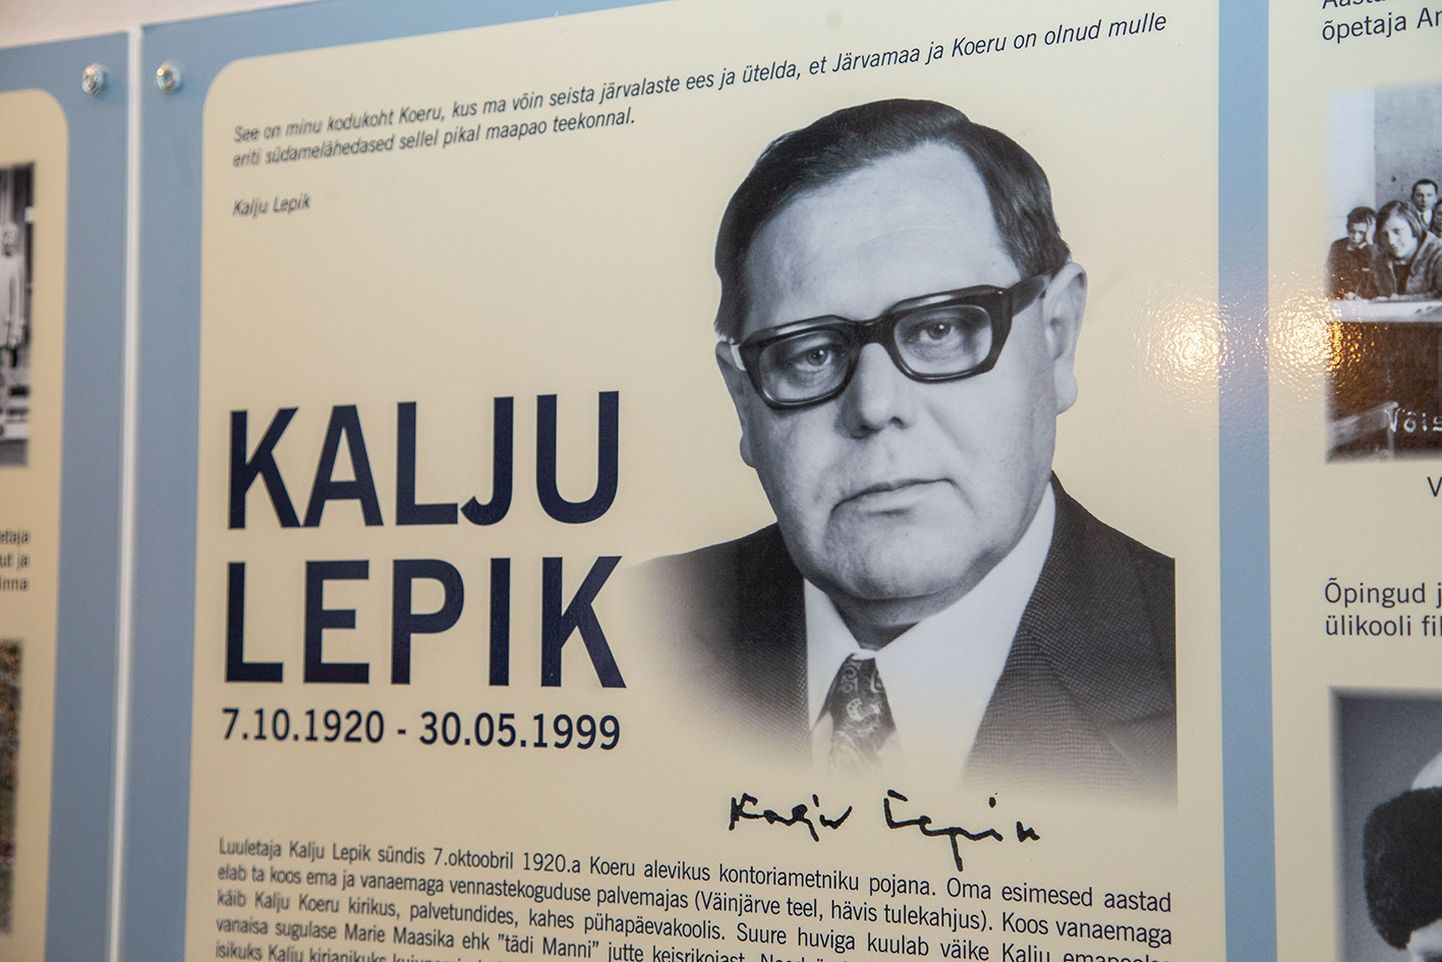 Kui Kalju Lepik 1944. aastal Hiiumaalt Rootsi põgenes, sai temast Eesti vabaduse eest võitleja, sõdalane värsivibuga, nagu eesti kirjanduslugu teda nüüd tituleerib.